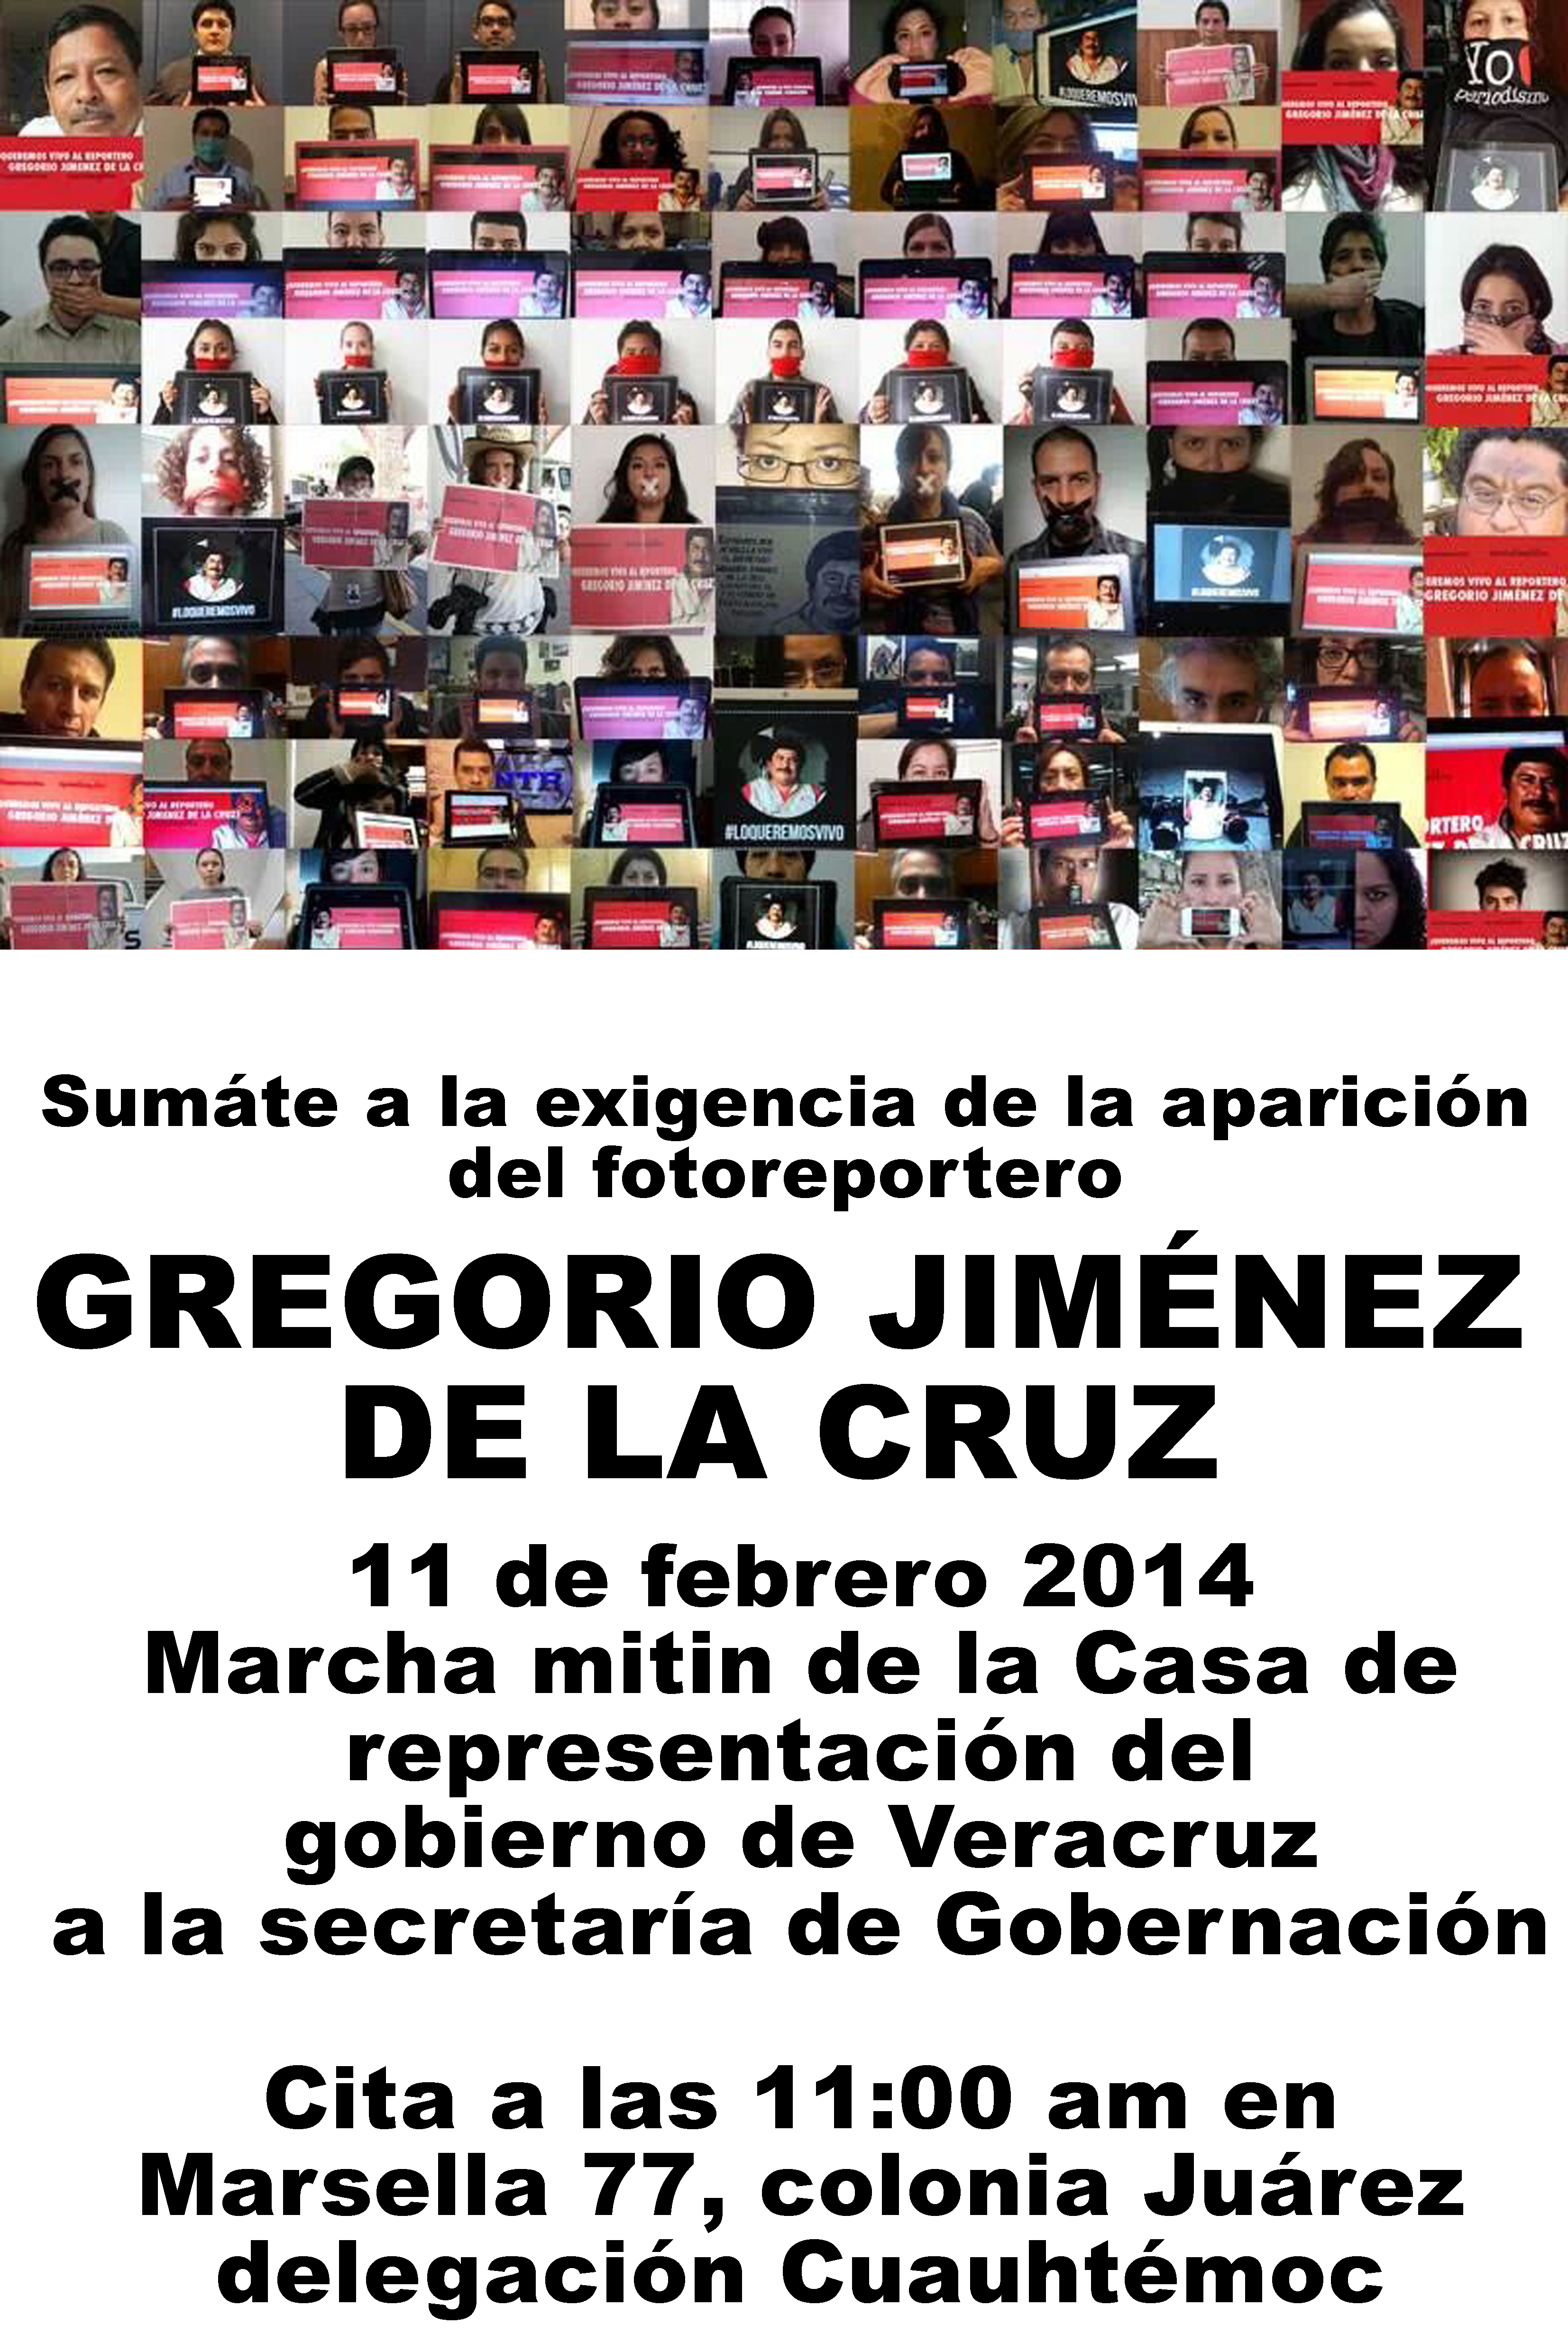 CDP: Invita a la marcha este 11 de febrero a las 11 hs. de la Representación del Edo de Veracruz a la SEGOB